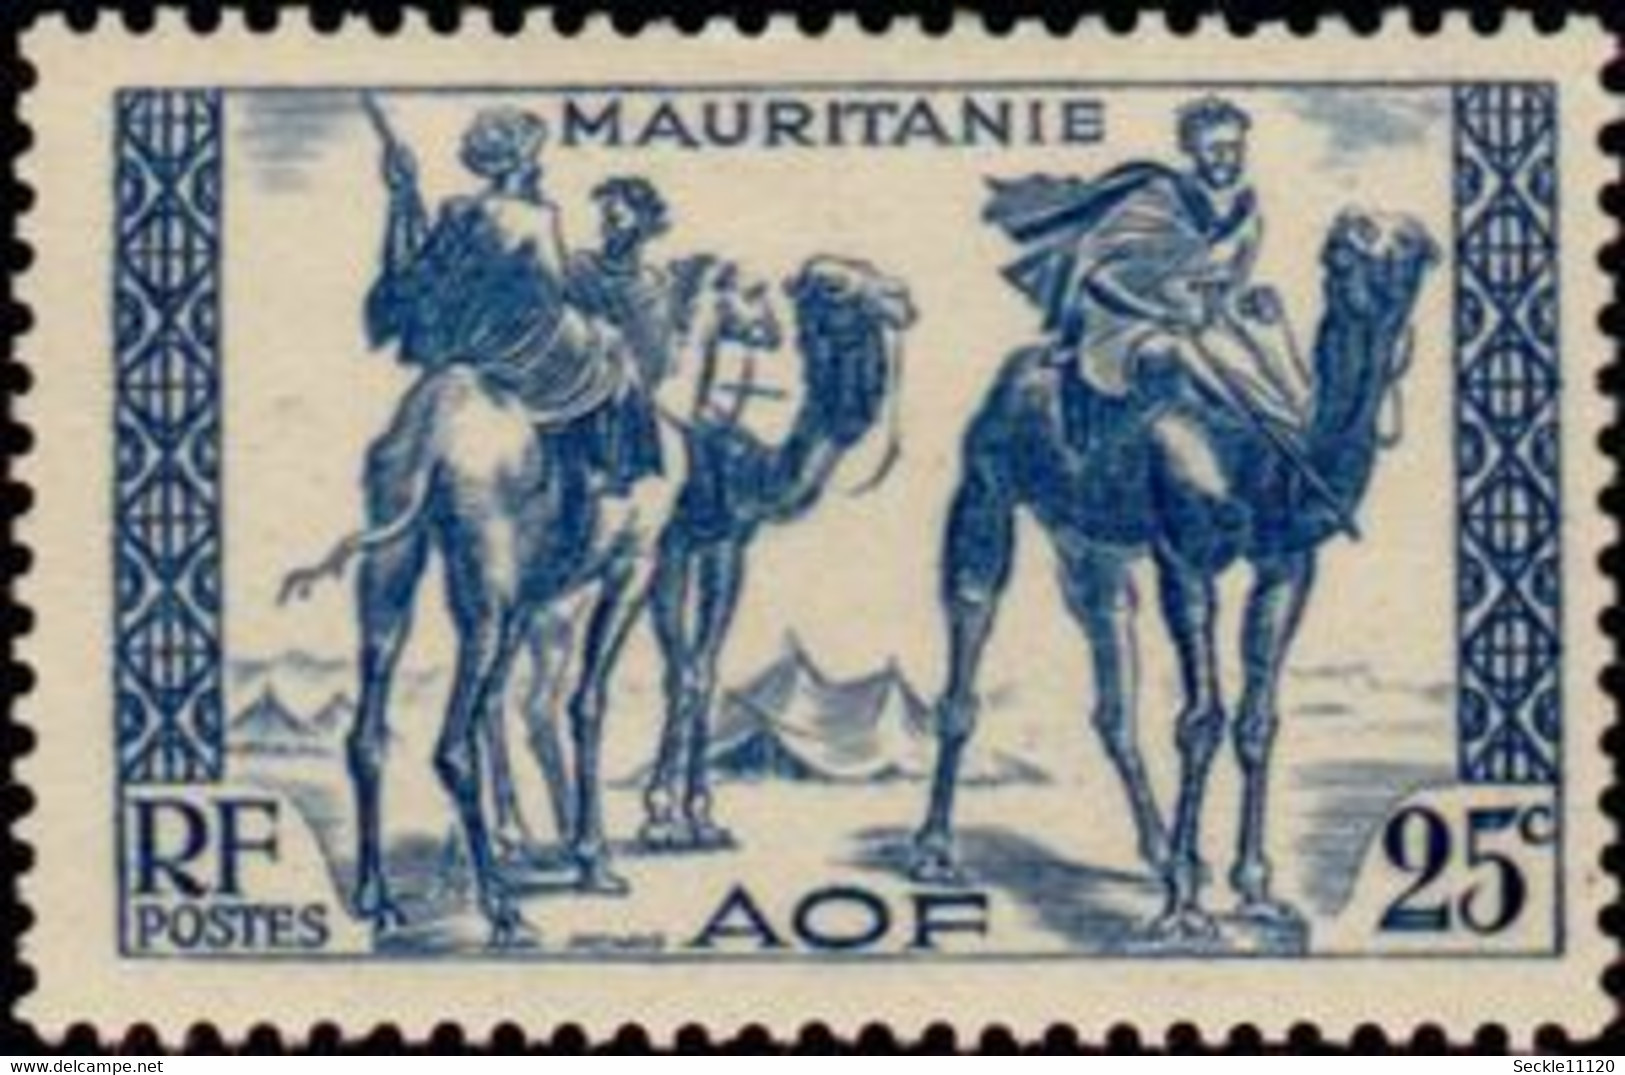 Mauritanie Mauritania - 1938 - 73 / 94 + 76a - Nomades Bédouins - MH